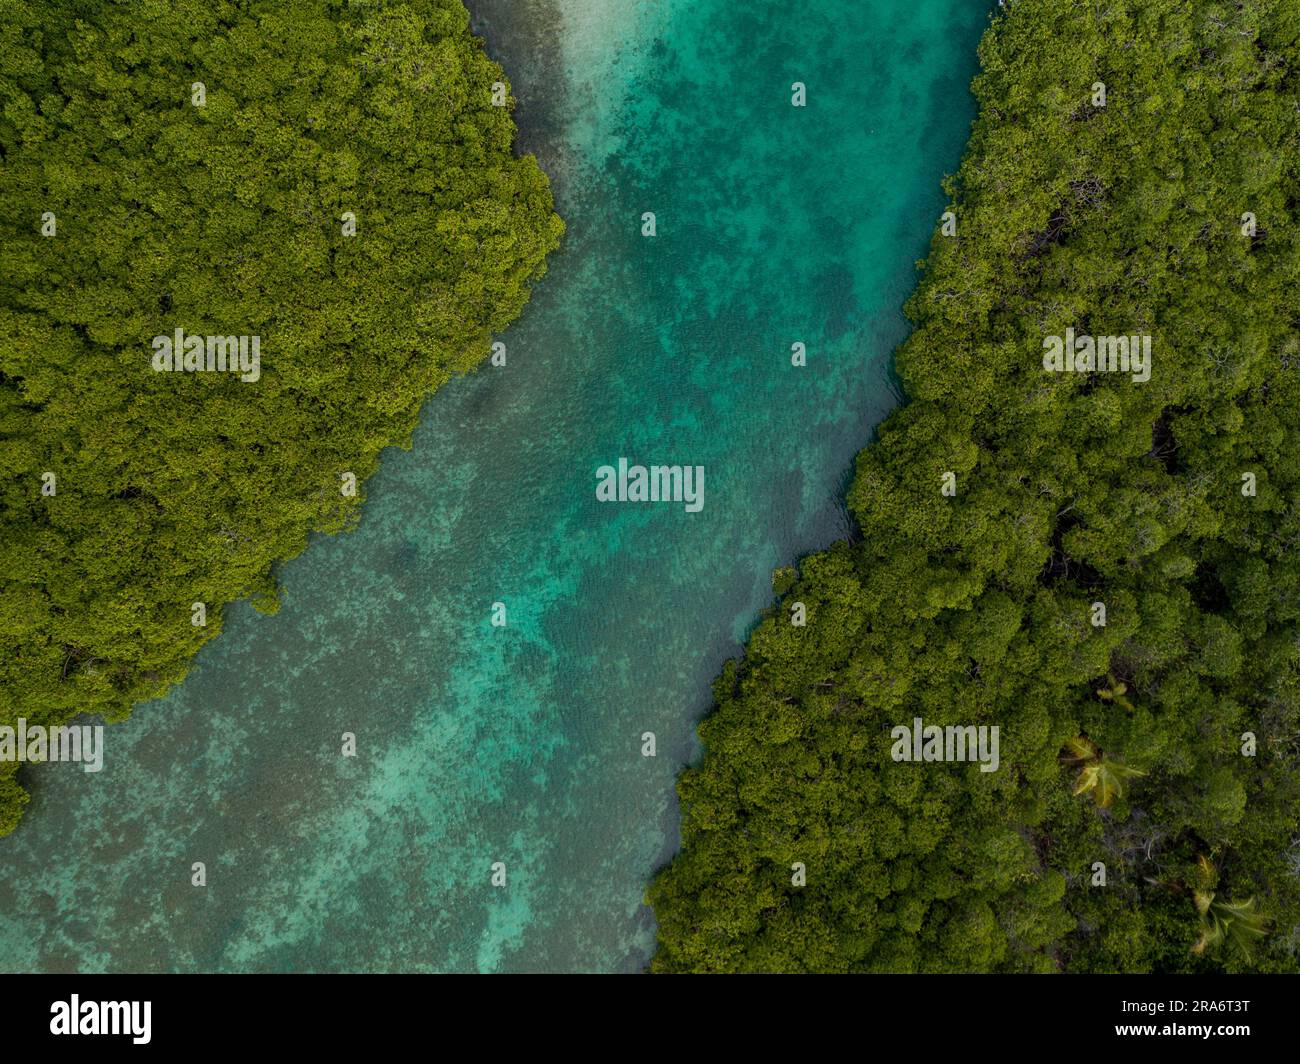 Aerial photograph of mangroves and sandbars in the Caribbean sea, Portobelo, Panama - stock photo Stock Photo